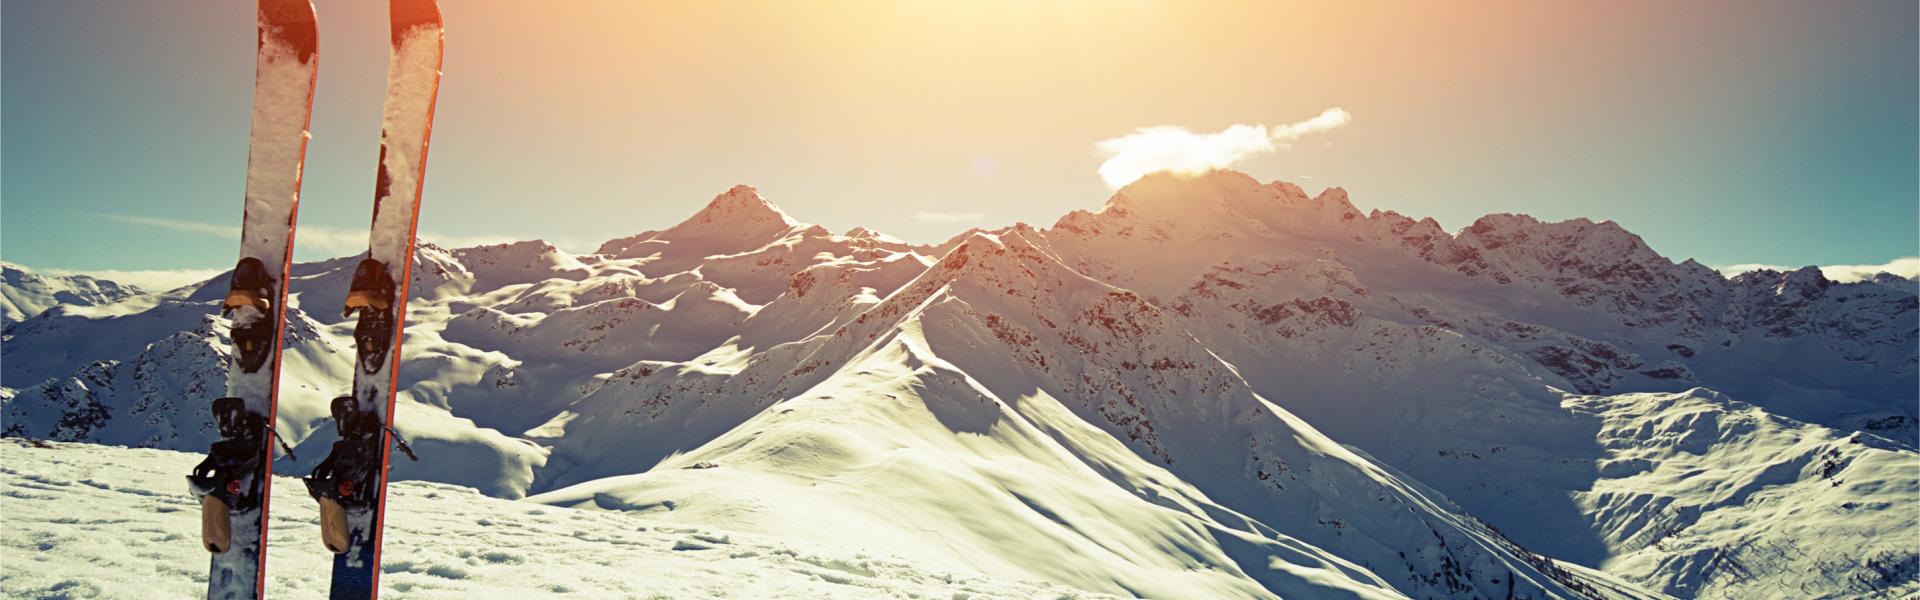 Skivakantie in de Franse Alpen, wintersport op zijn mooist - Casamundo